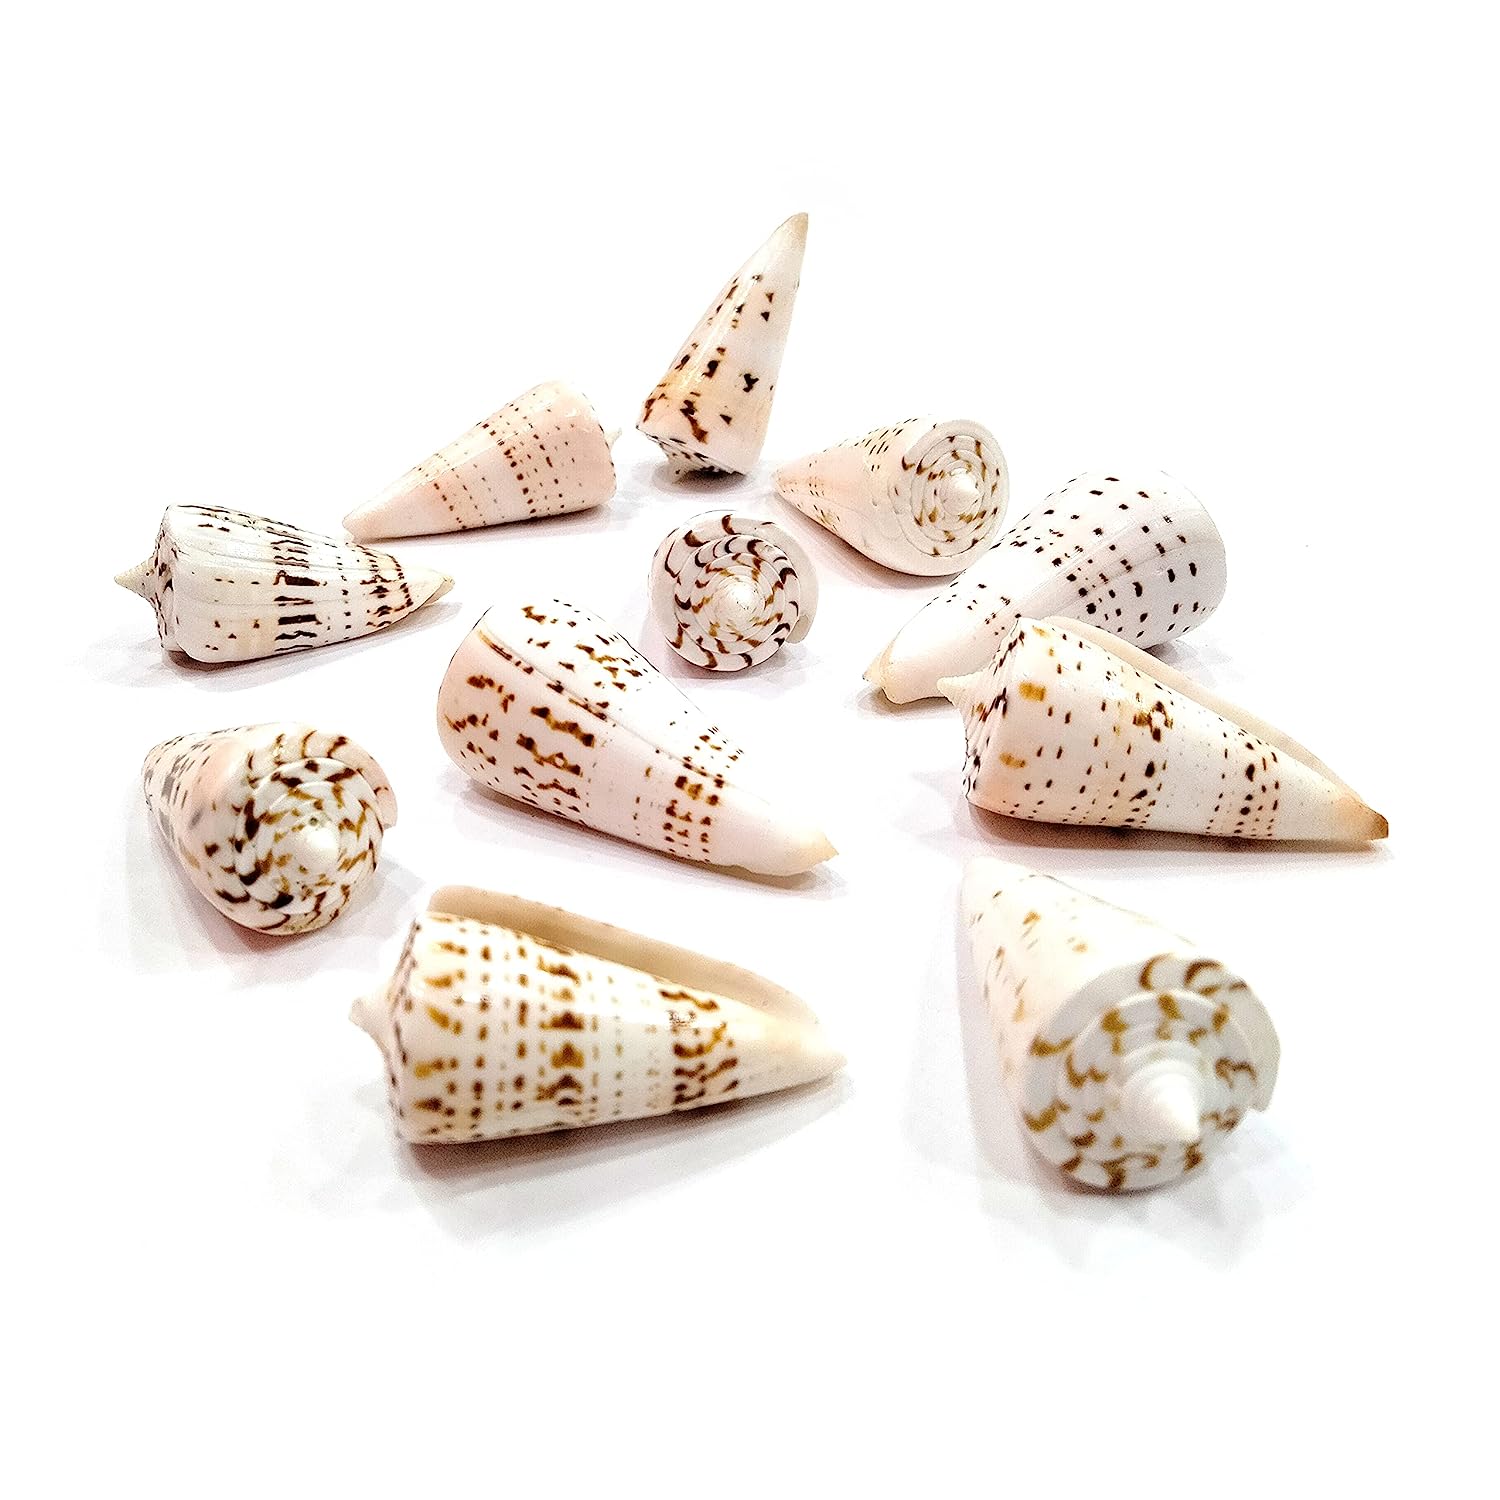 Seashell - Betullene - Leopard Cone - Conus Leopardus - Arts and Crafts - Aquarium - Valaipoo- Pack of 10